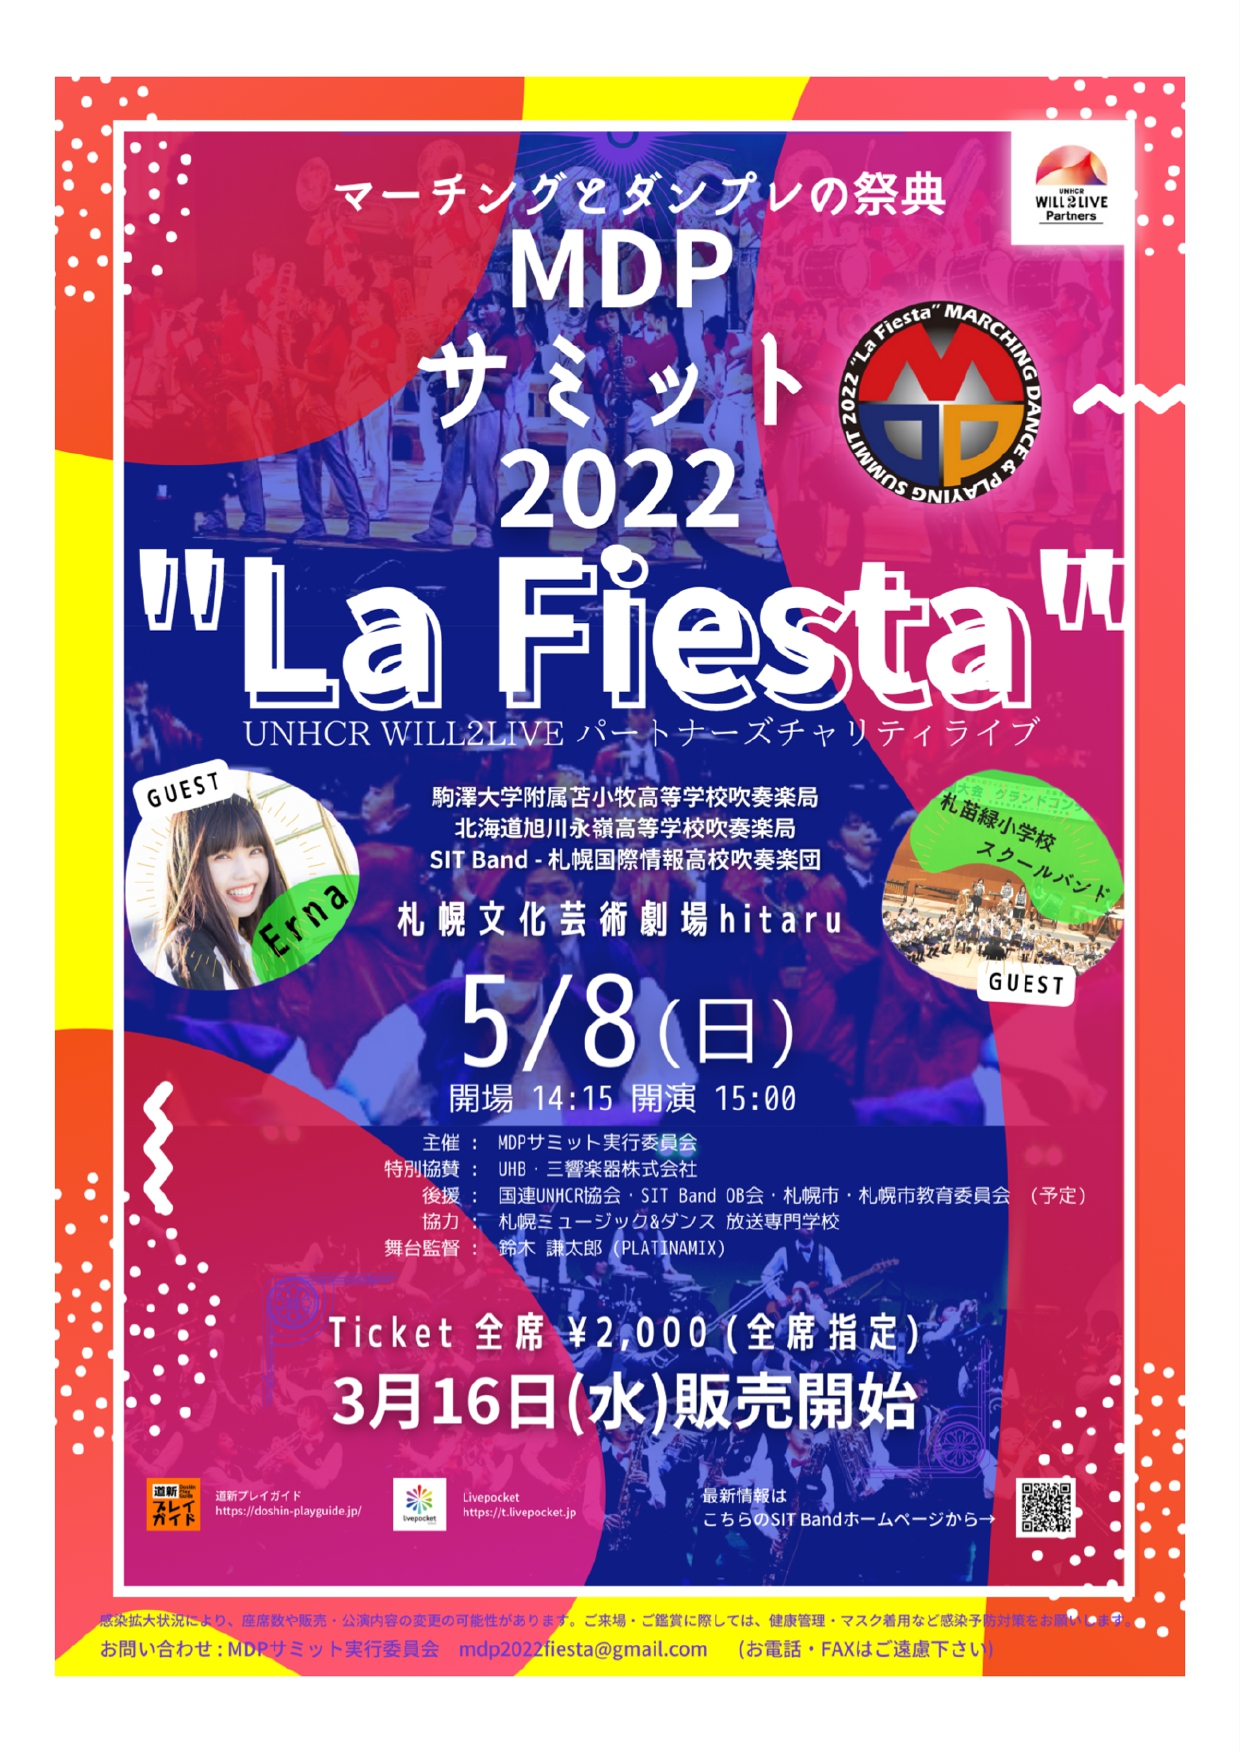 MDPサミット2022  La Fiesta  -UNHCR WILL2 LIVE- パートナーズチャリティライブのイメージ